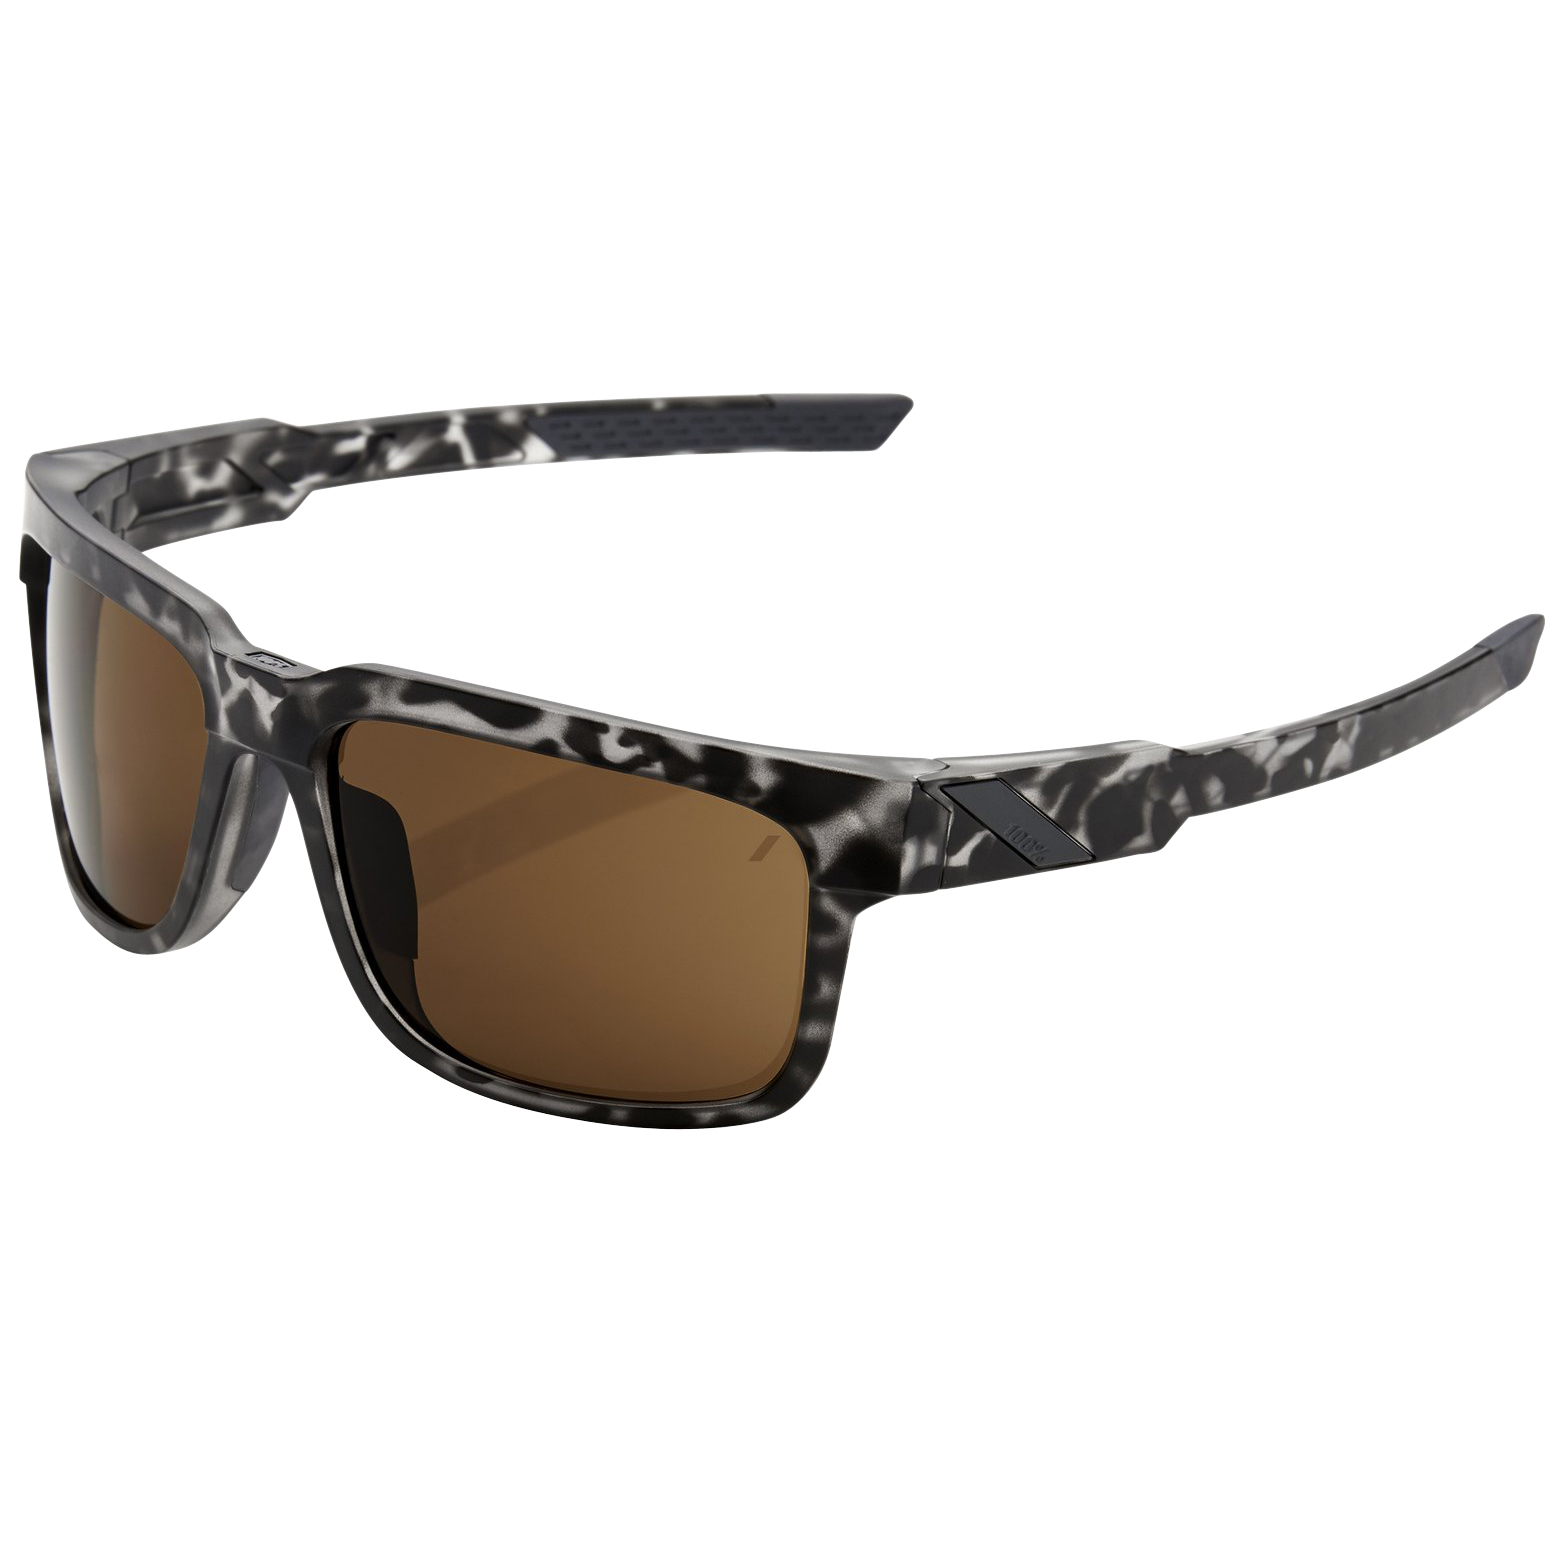 Productfoto van 100% Type S Glasses - Matte Black Havana / Bronze